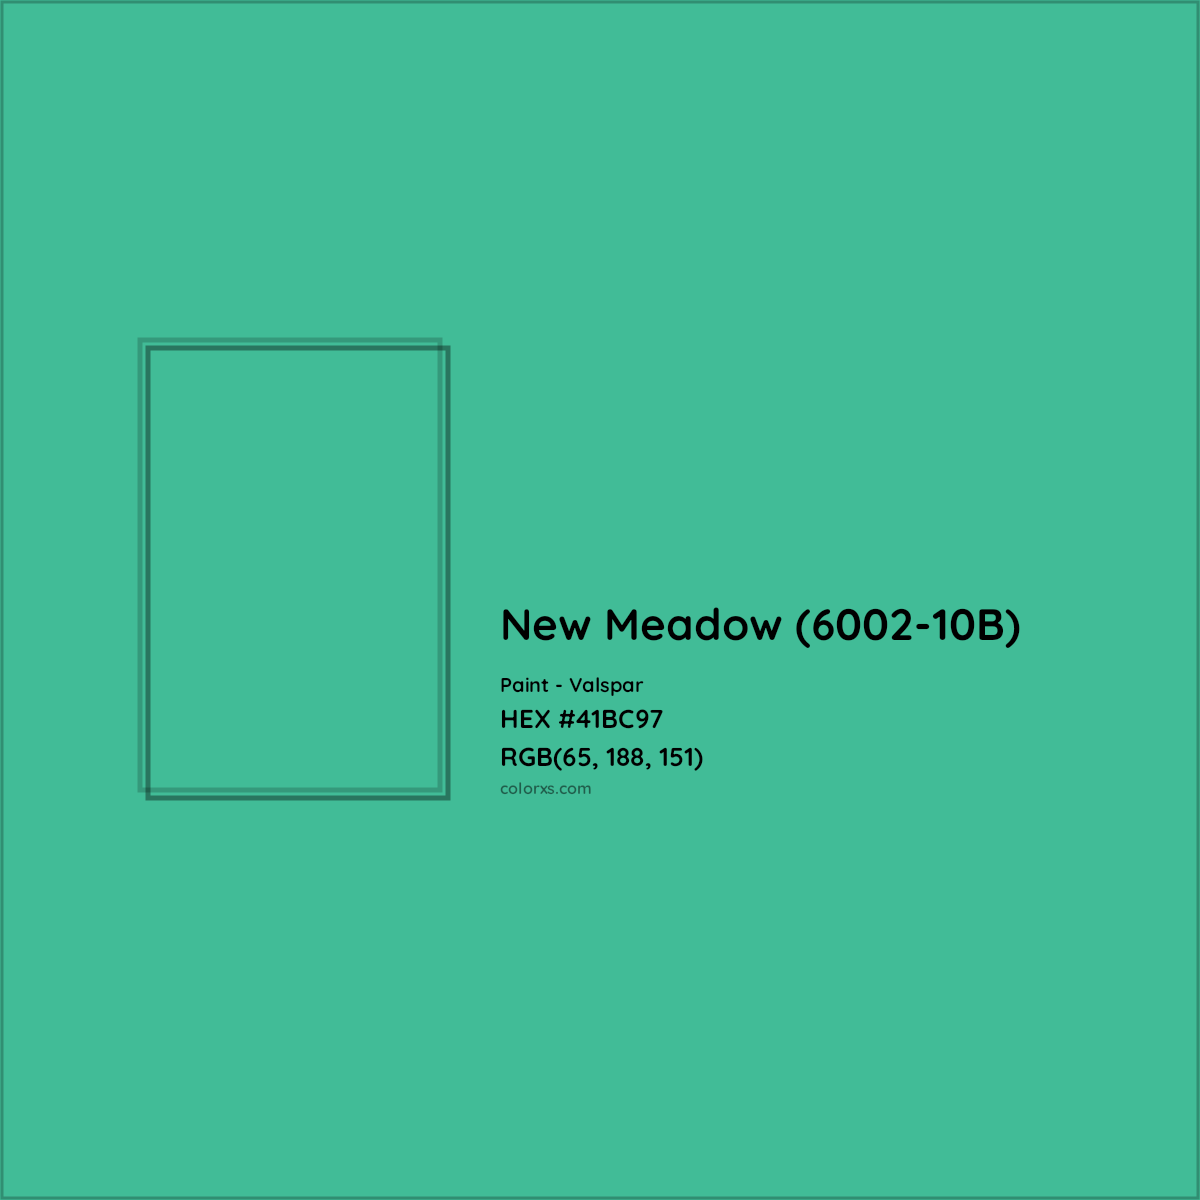 HEX #41BC97 New Meadow (6002-10B) Paint Valspar - Color Code